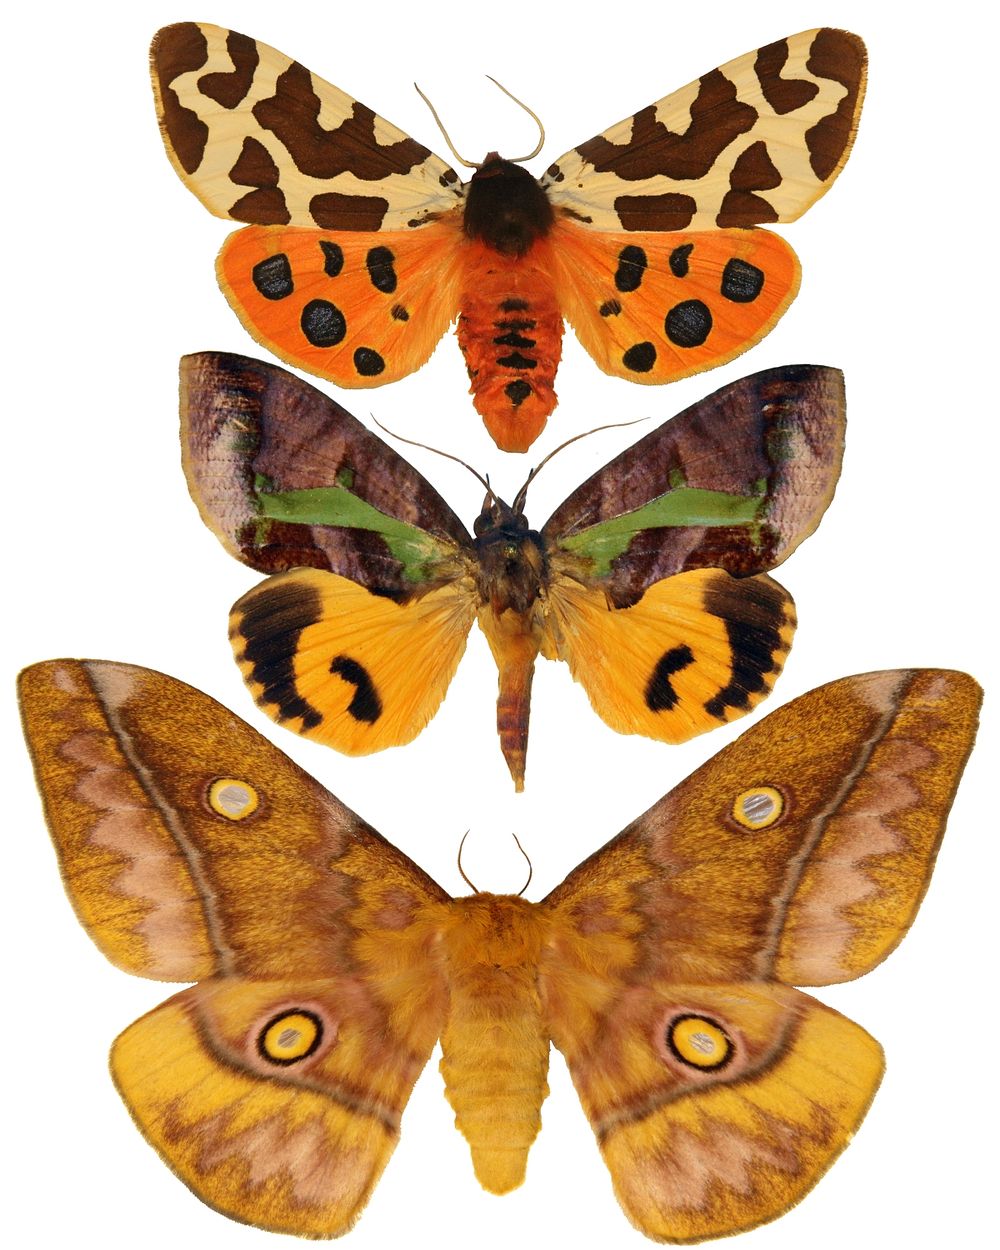 Moths. Original public domain image from Flickr